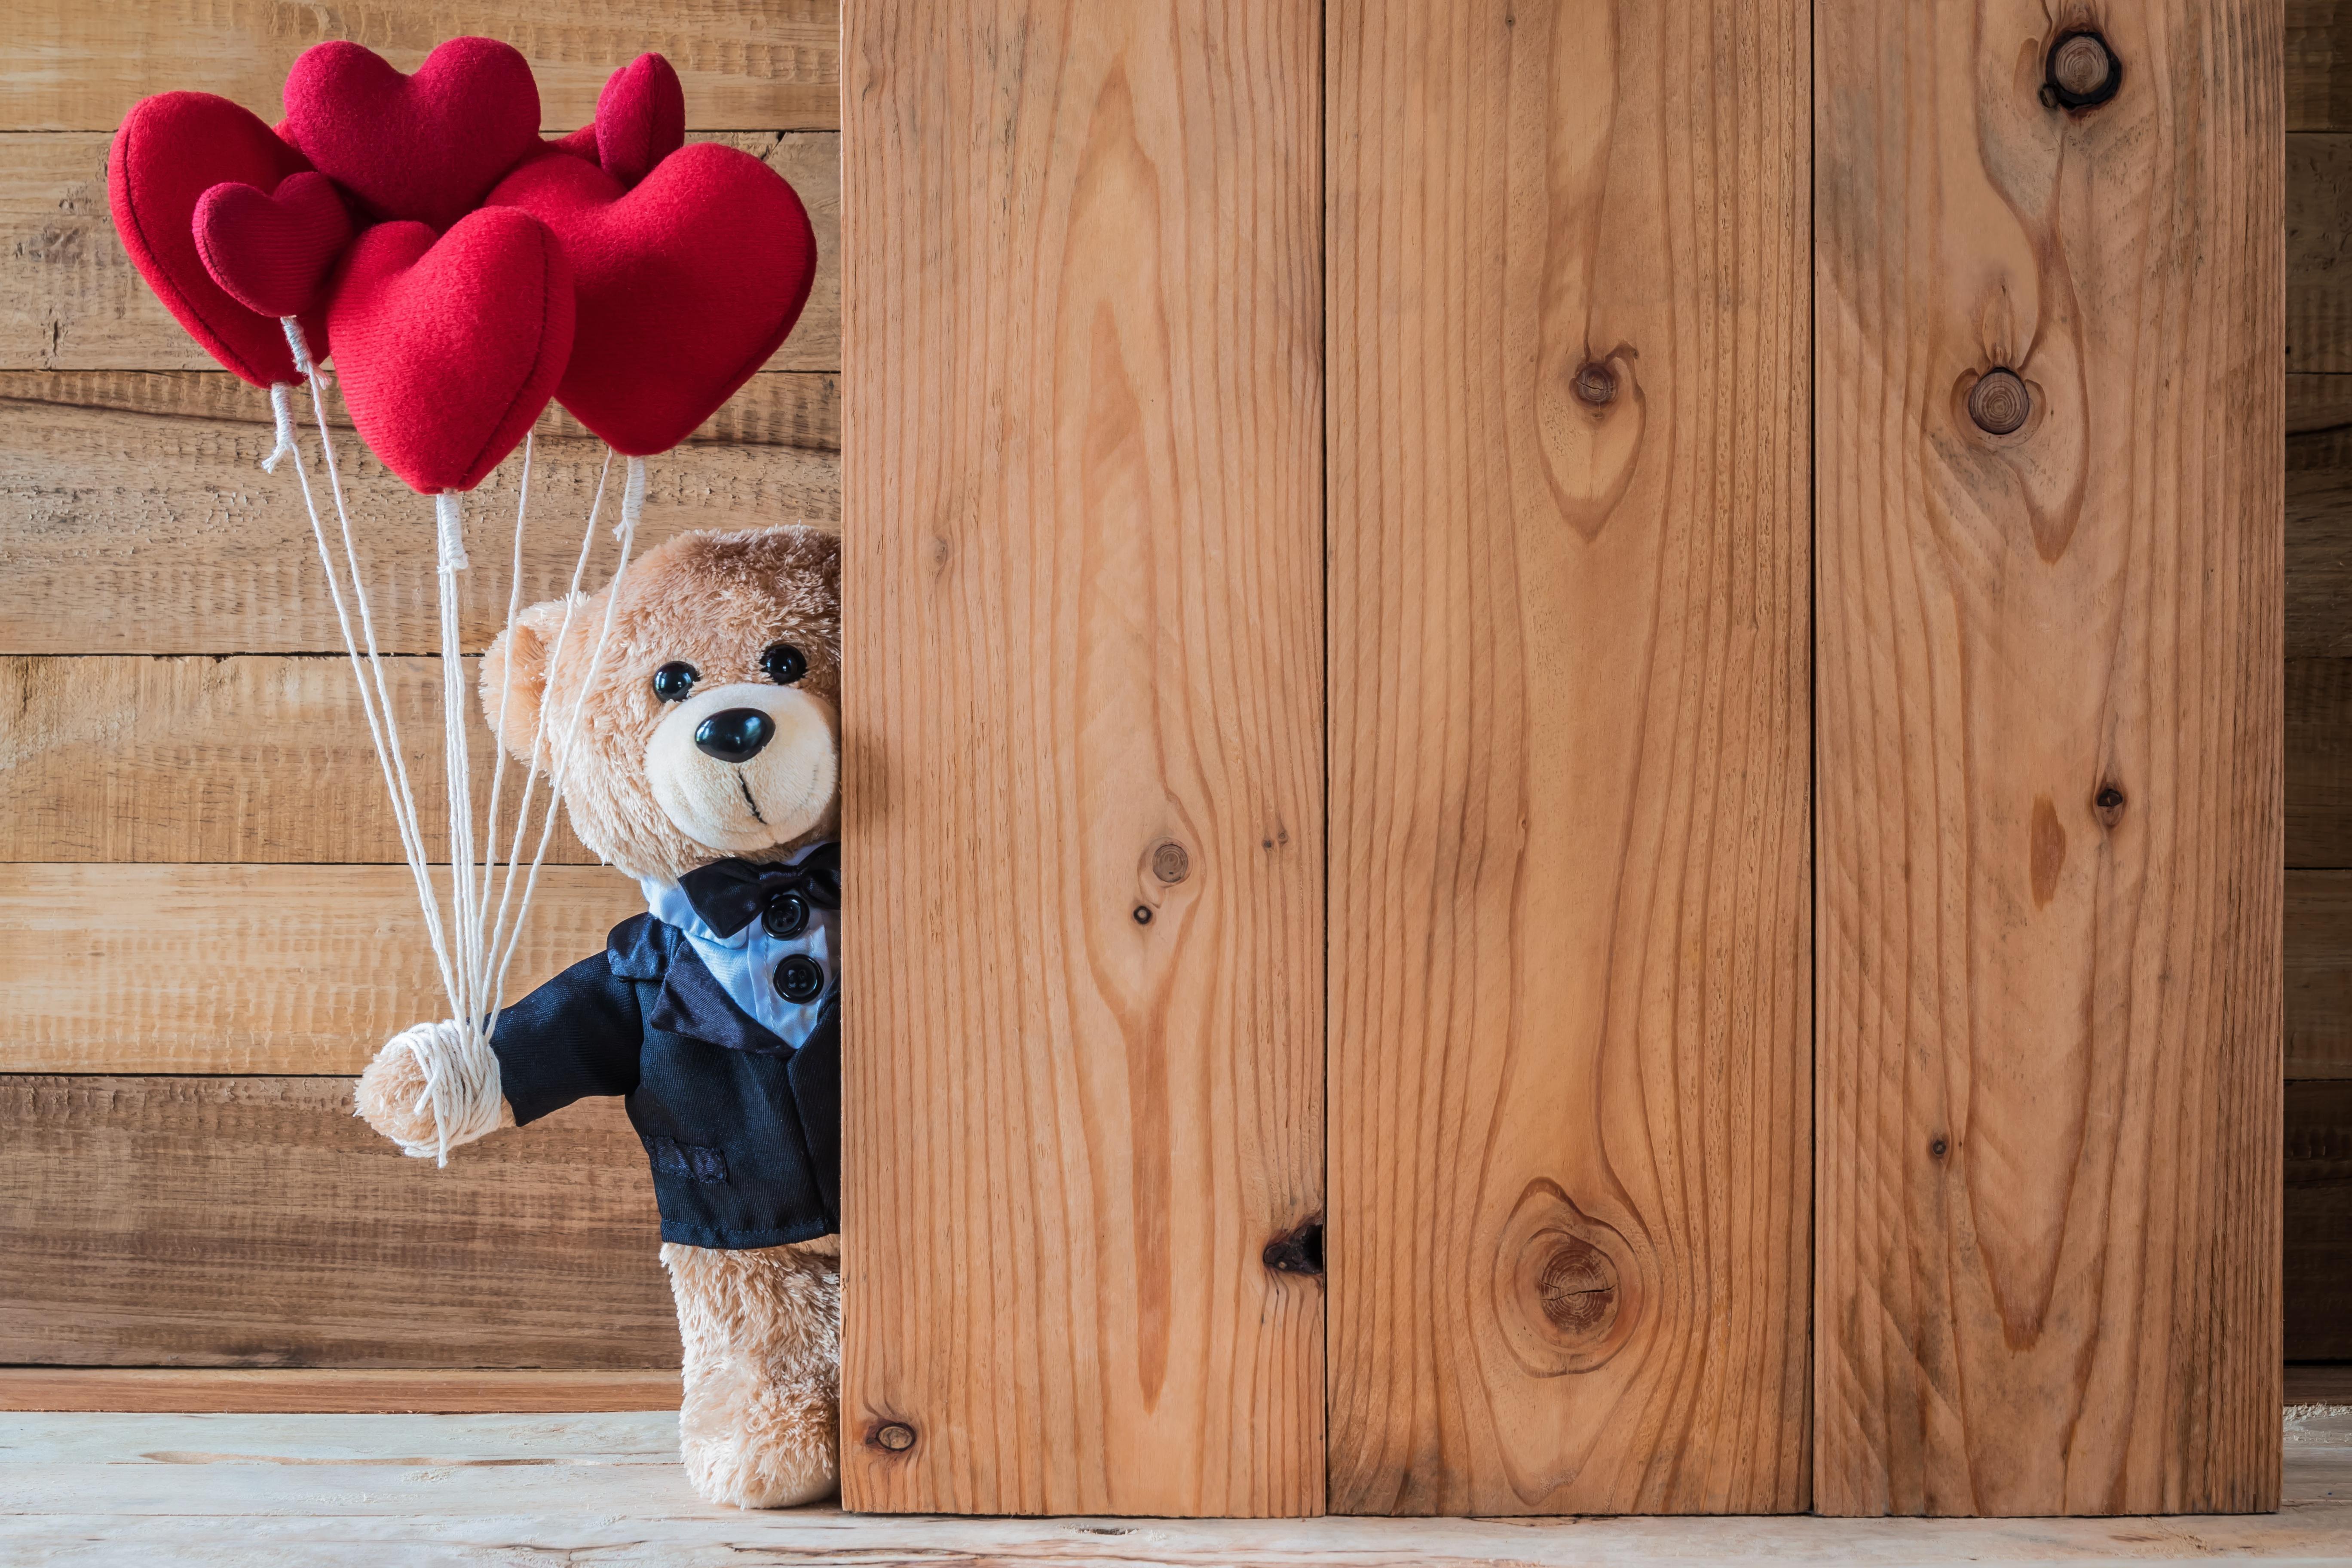 Stuffed Animal, Teddy Bear, Heart wallpaper